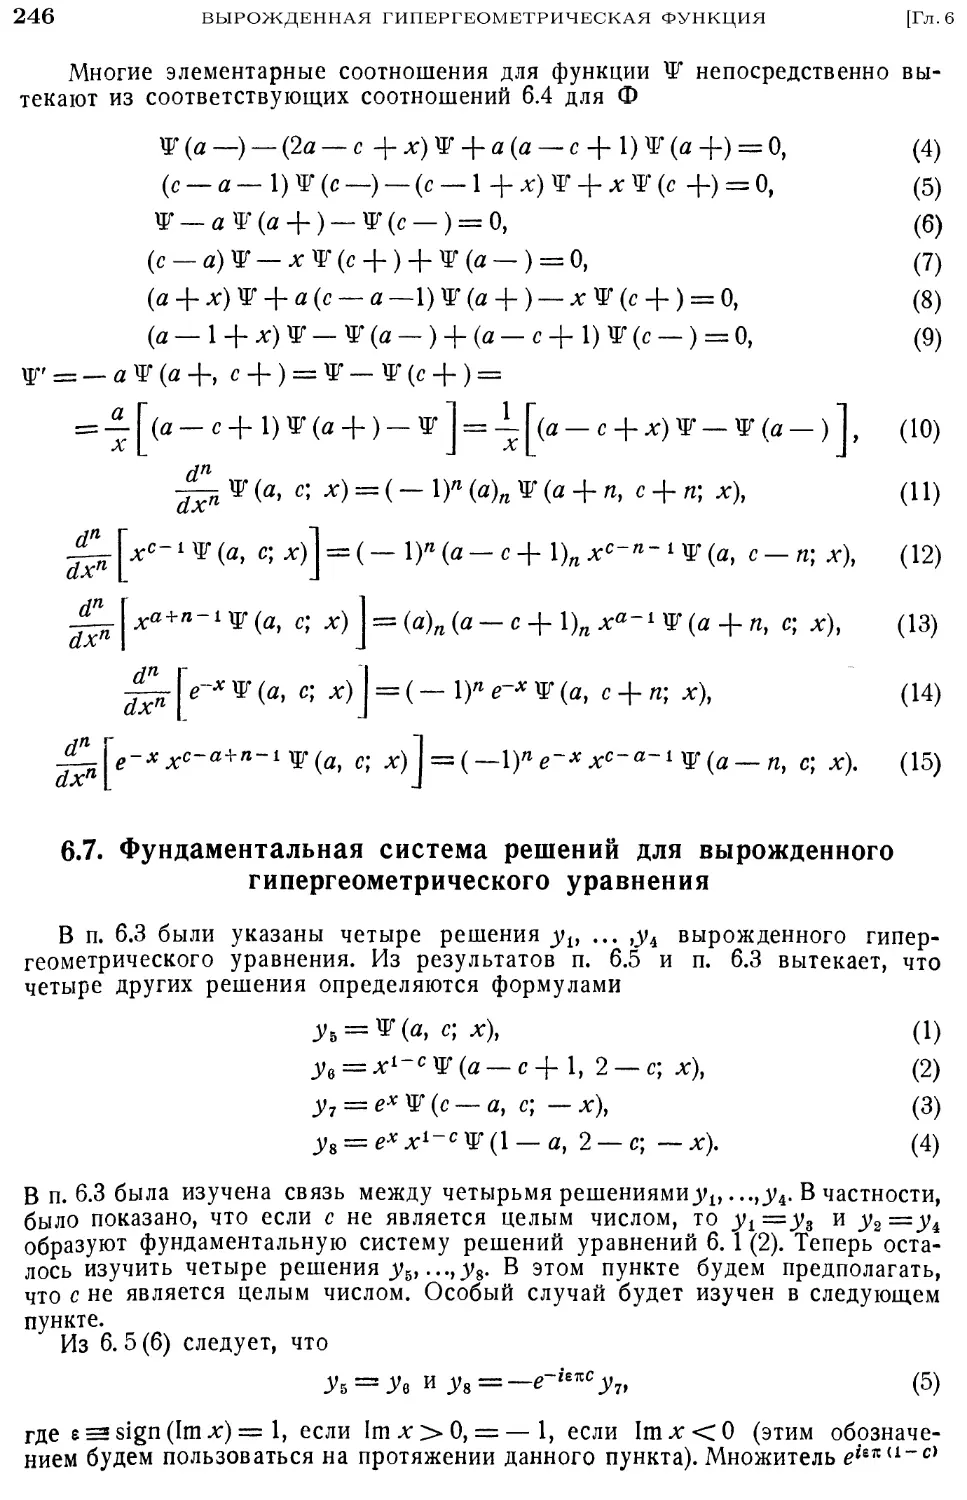 6.7. Фундаментальная система решений для вырожденного гипергеометрического уравнения